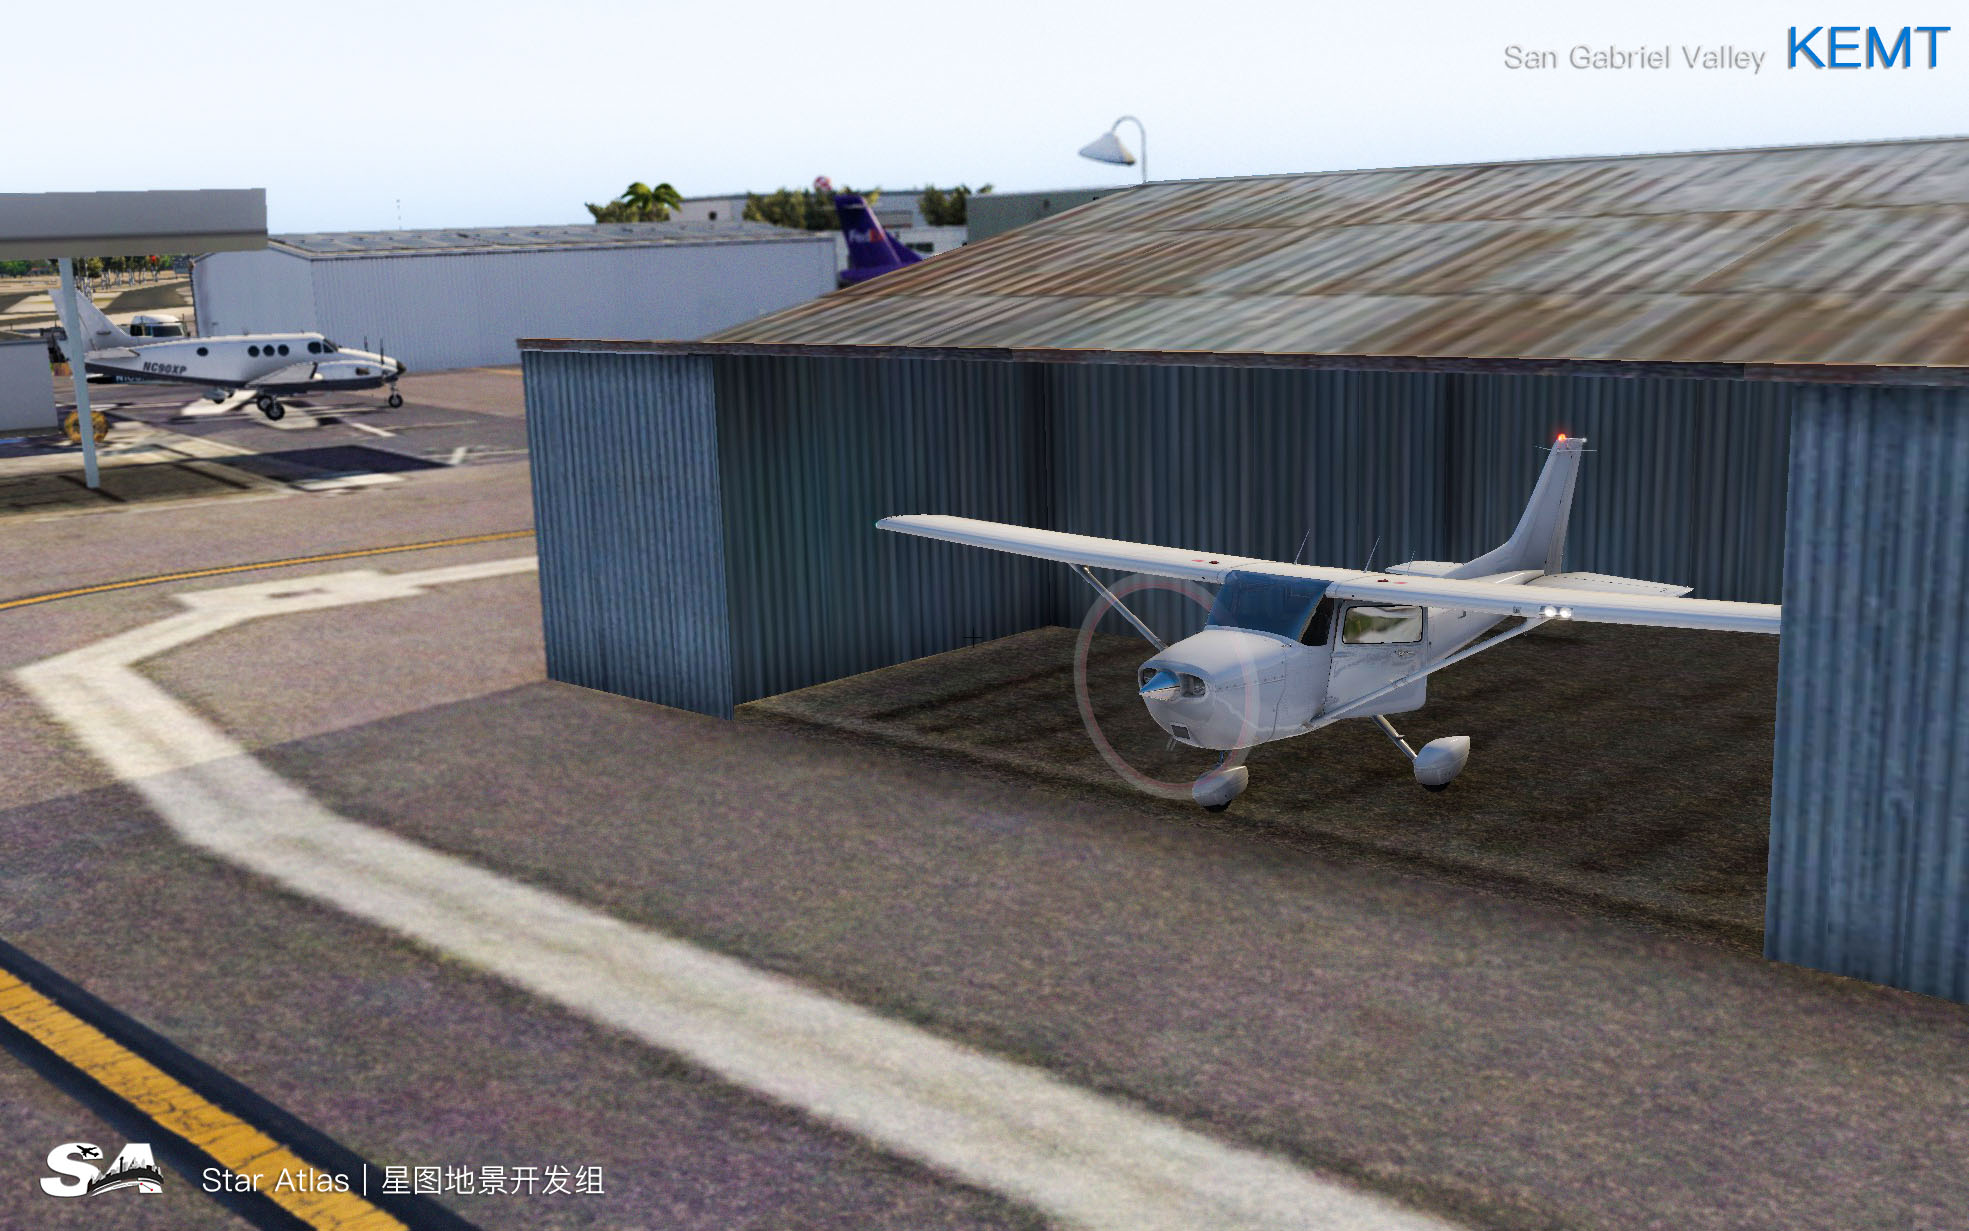 【X-Plane】KEMT-圣盖博谷机场 HD 1.0-1471 